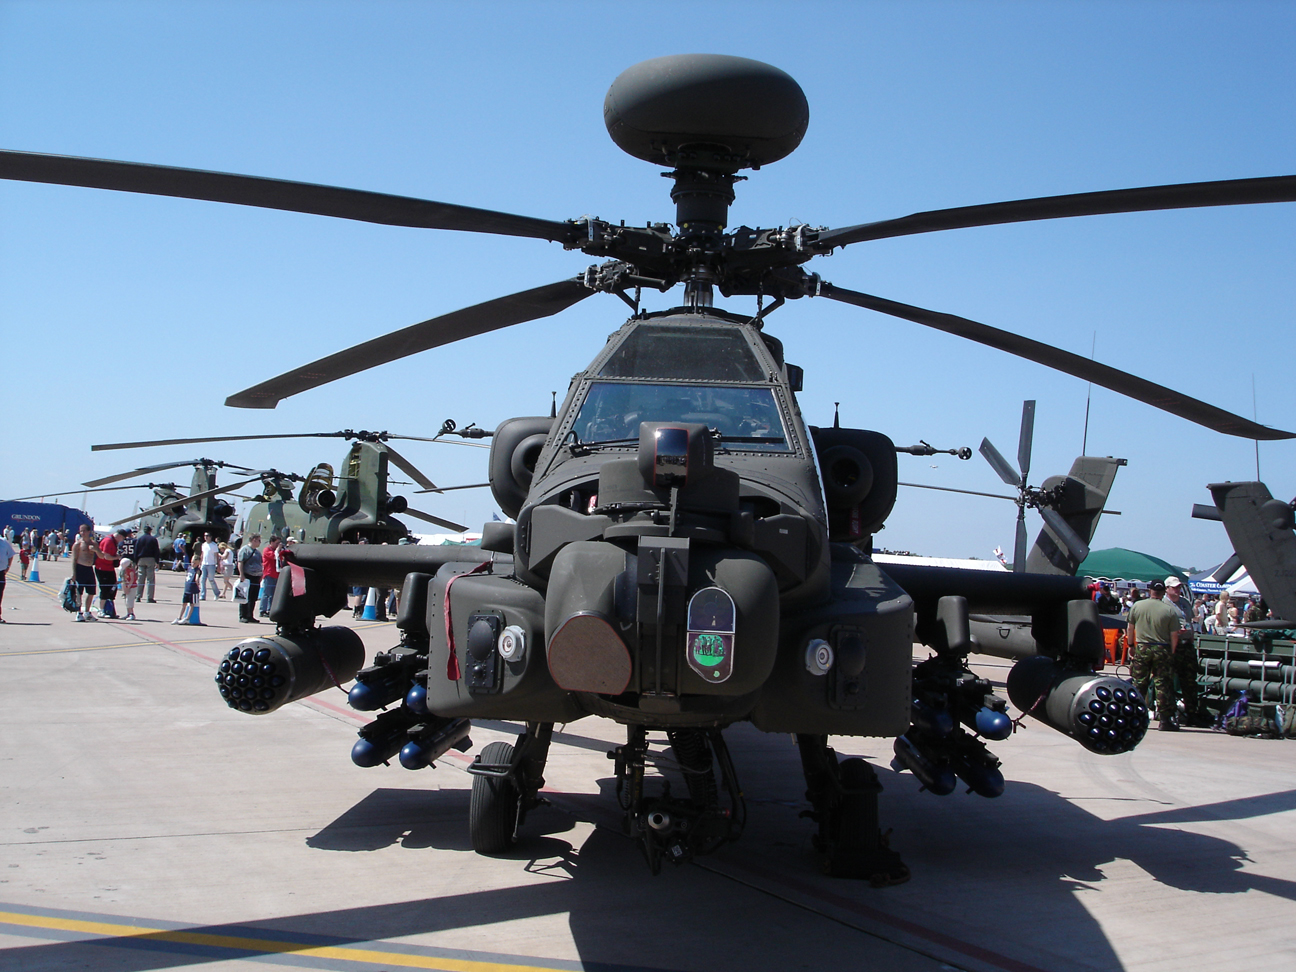 المروحيات الهجومية المستخدمة من قبل البلاد العربية - صفحة 2 AH-64D+Block+III+Longbow+Apache